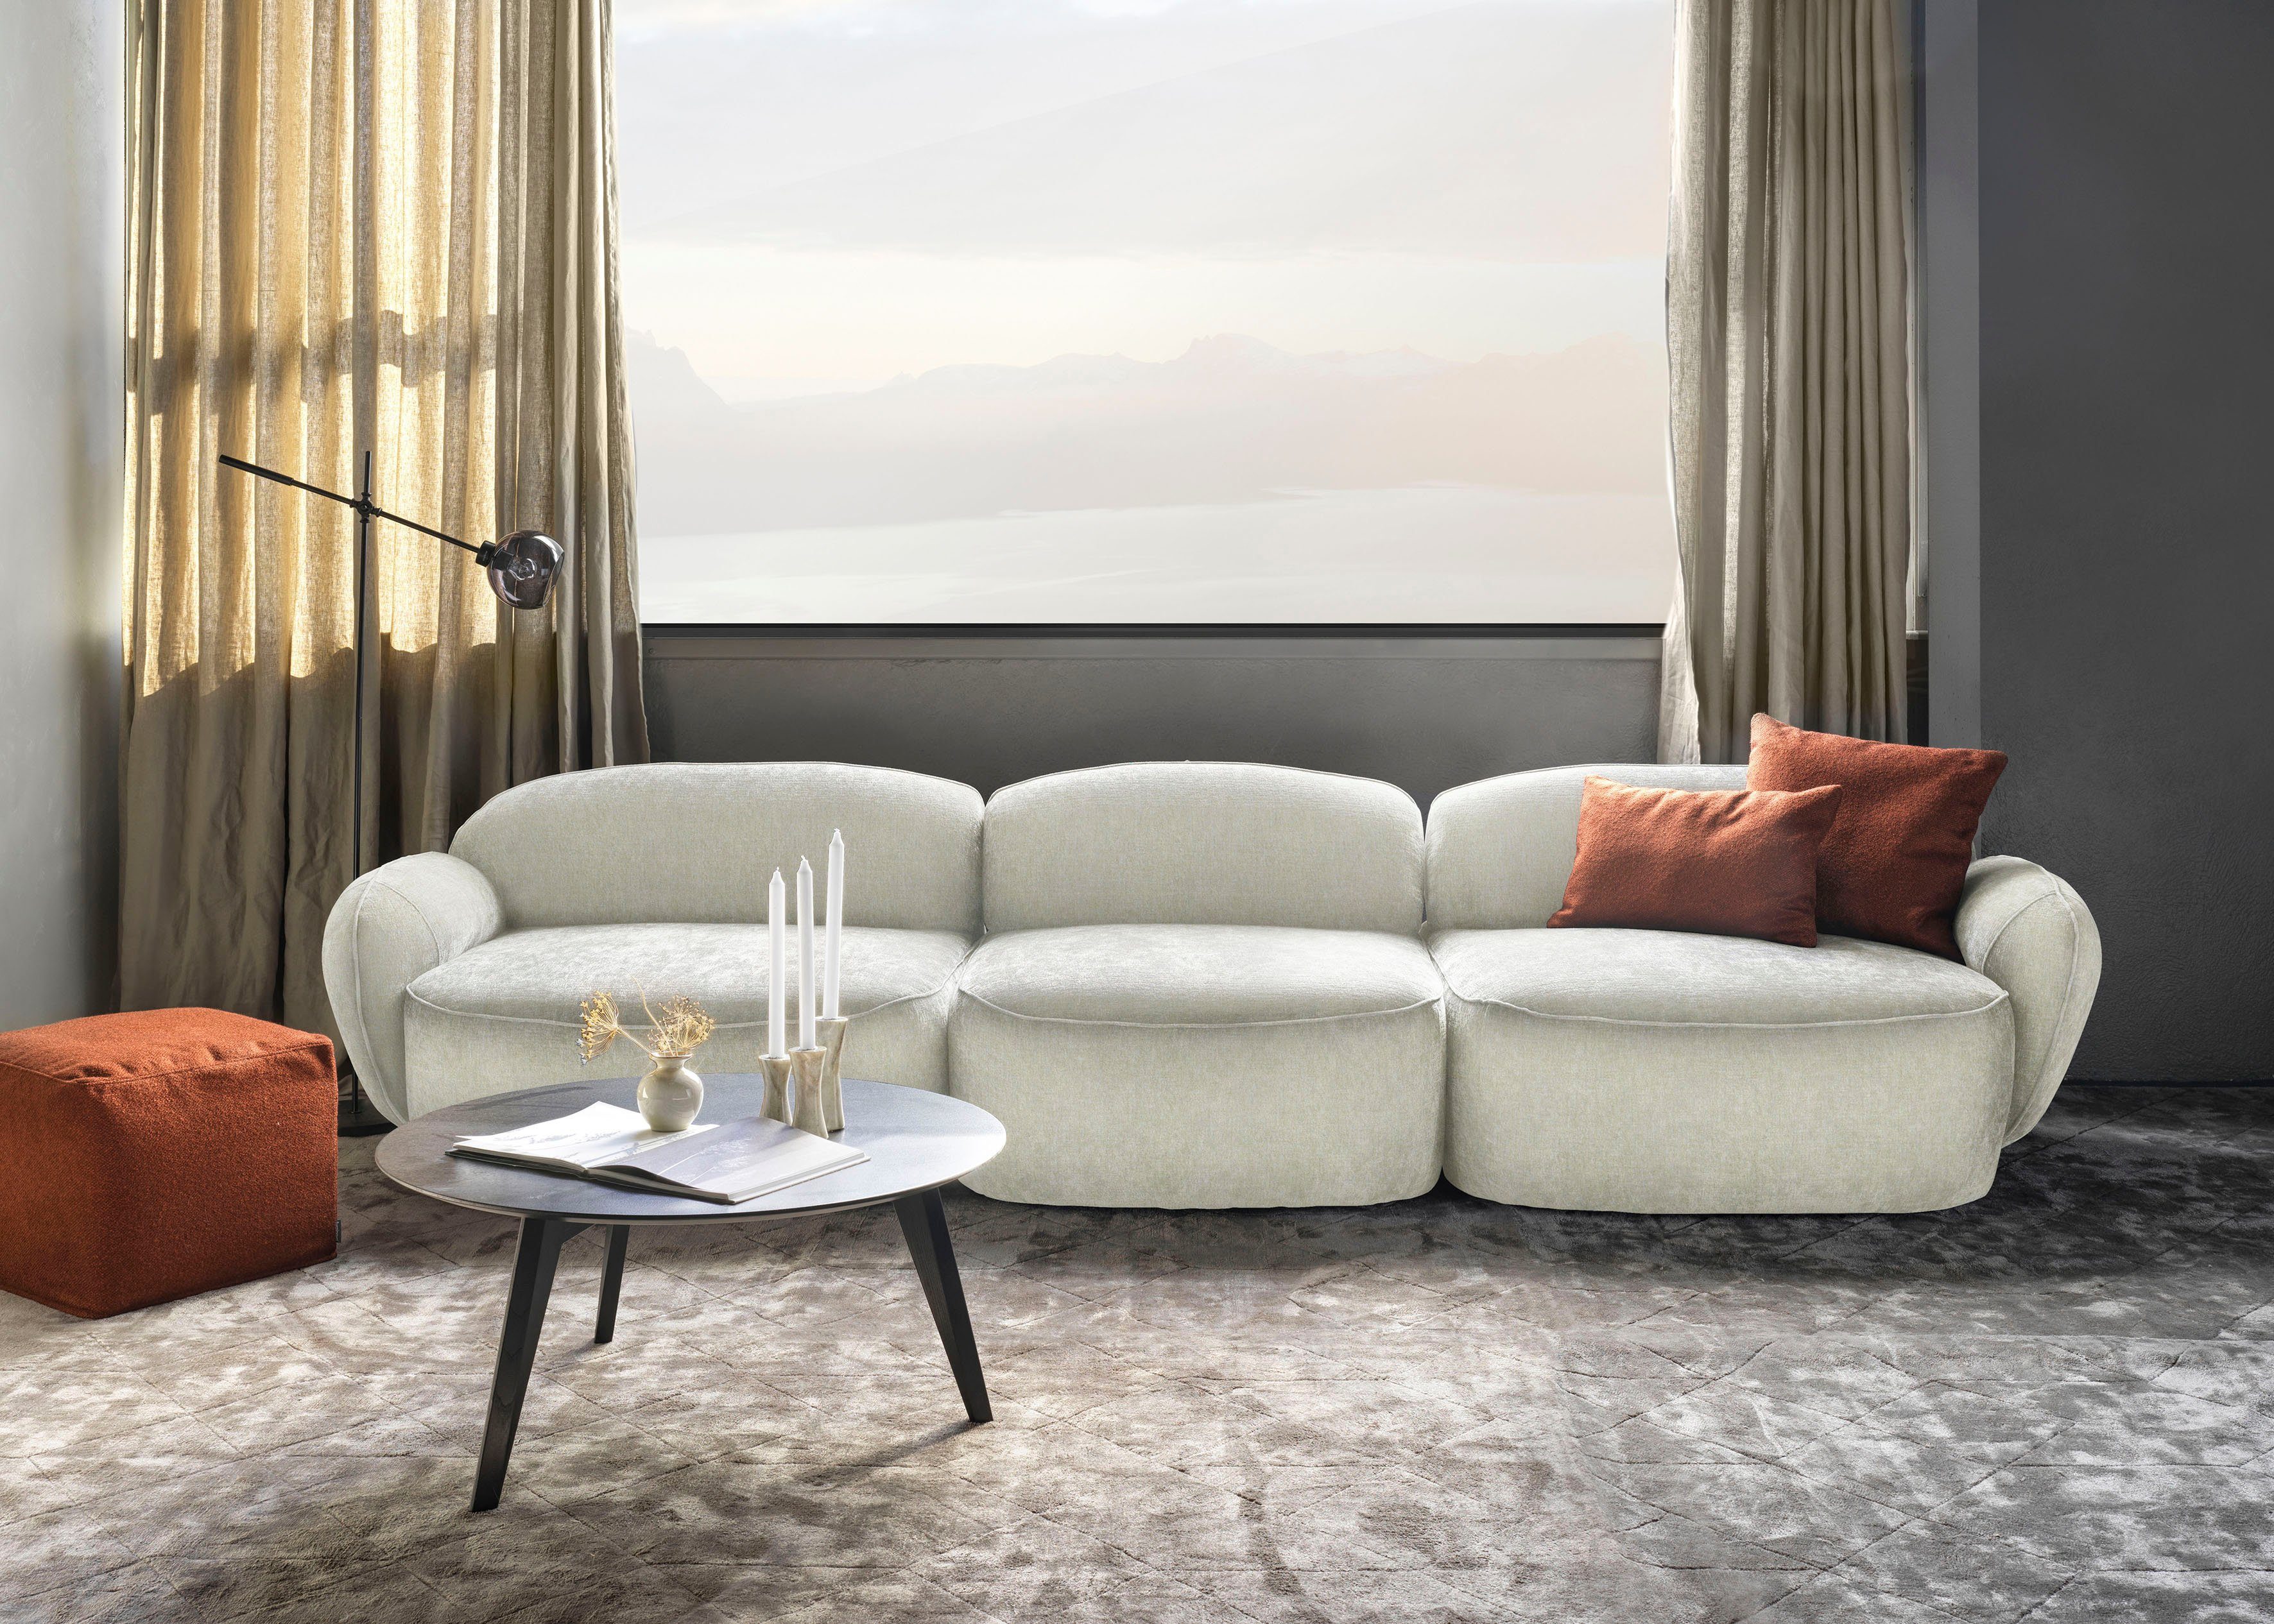 furninova 3,5-Sitzer Design Bubble, skandinavischen durch Memoryschaum, im komfortabel